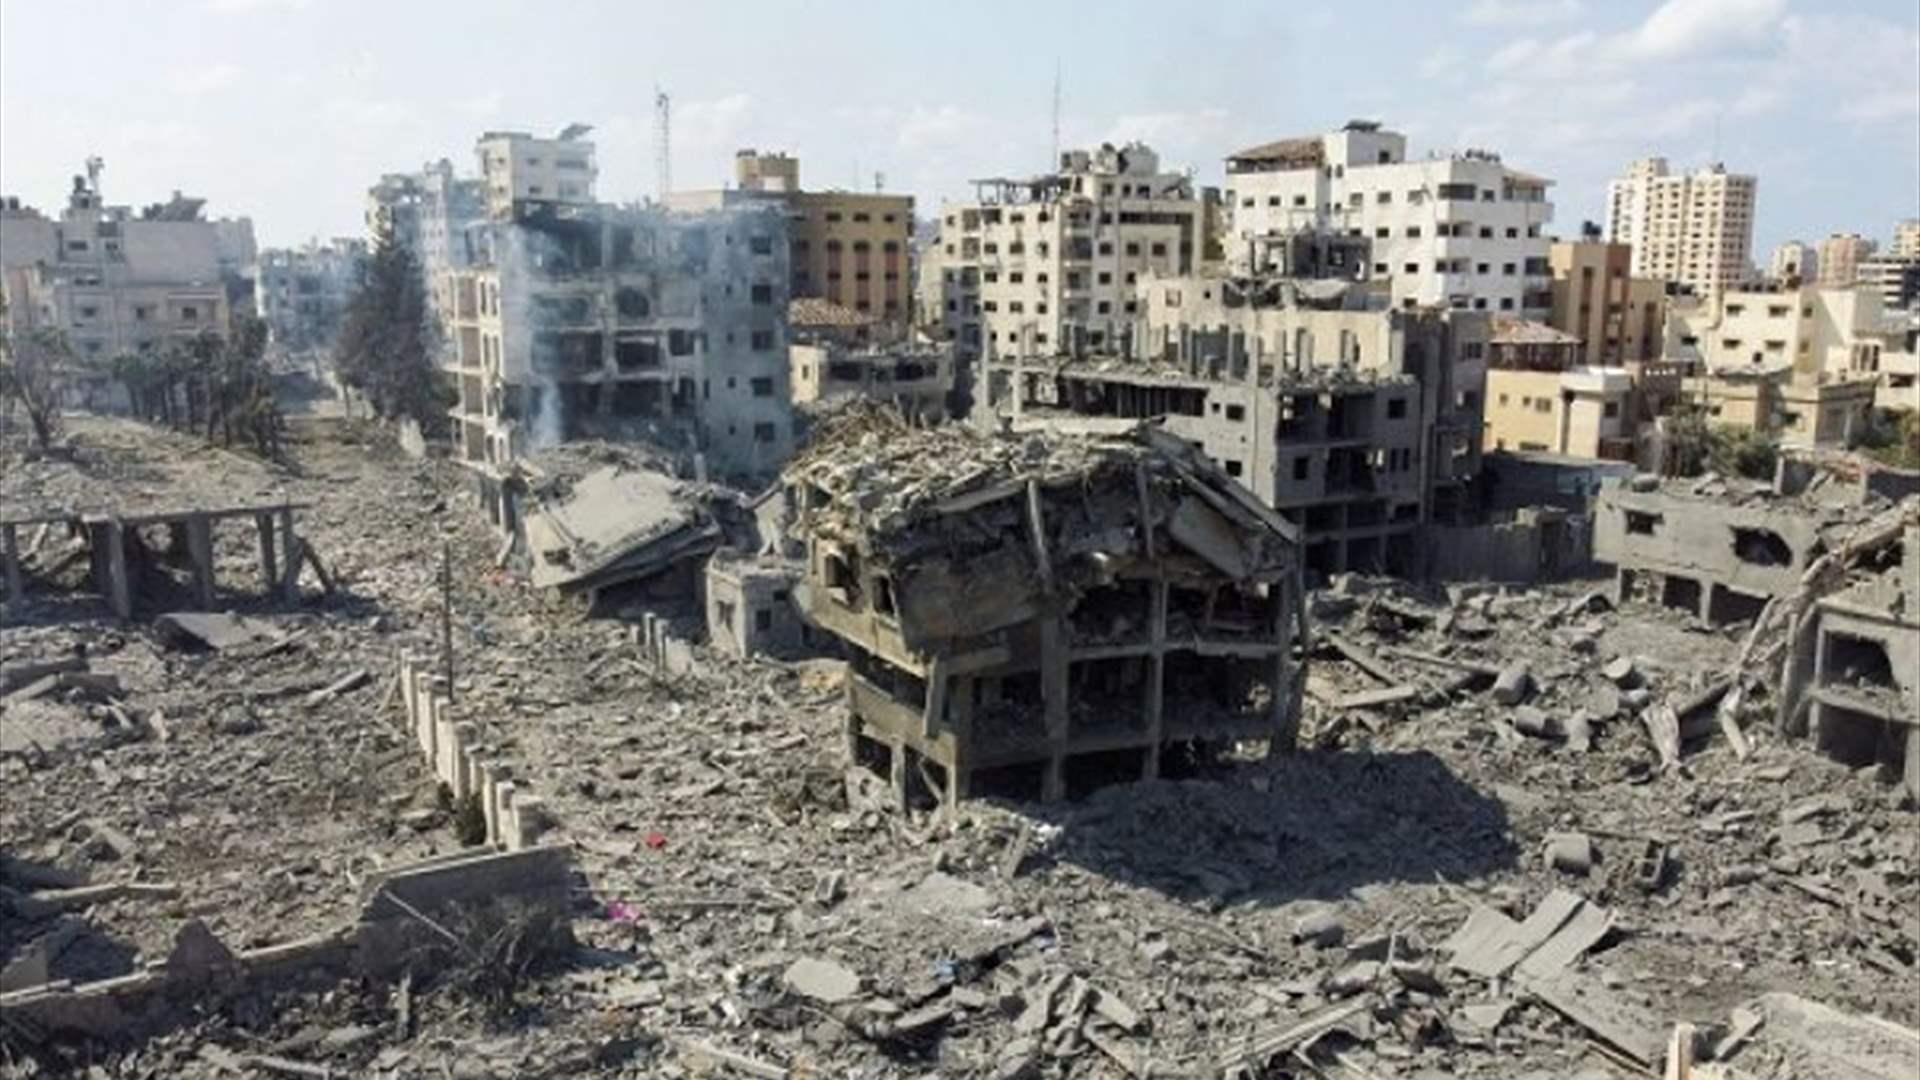 وزارة الصحة التابعة لحركة حماس تسجل وقوع 6546 قتيلًا في قطاع غزة منذ بدء الحرب